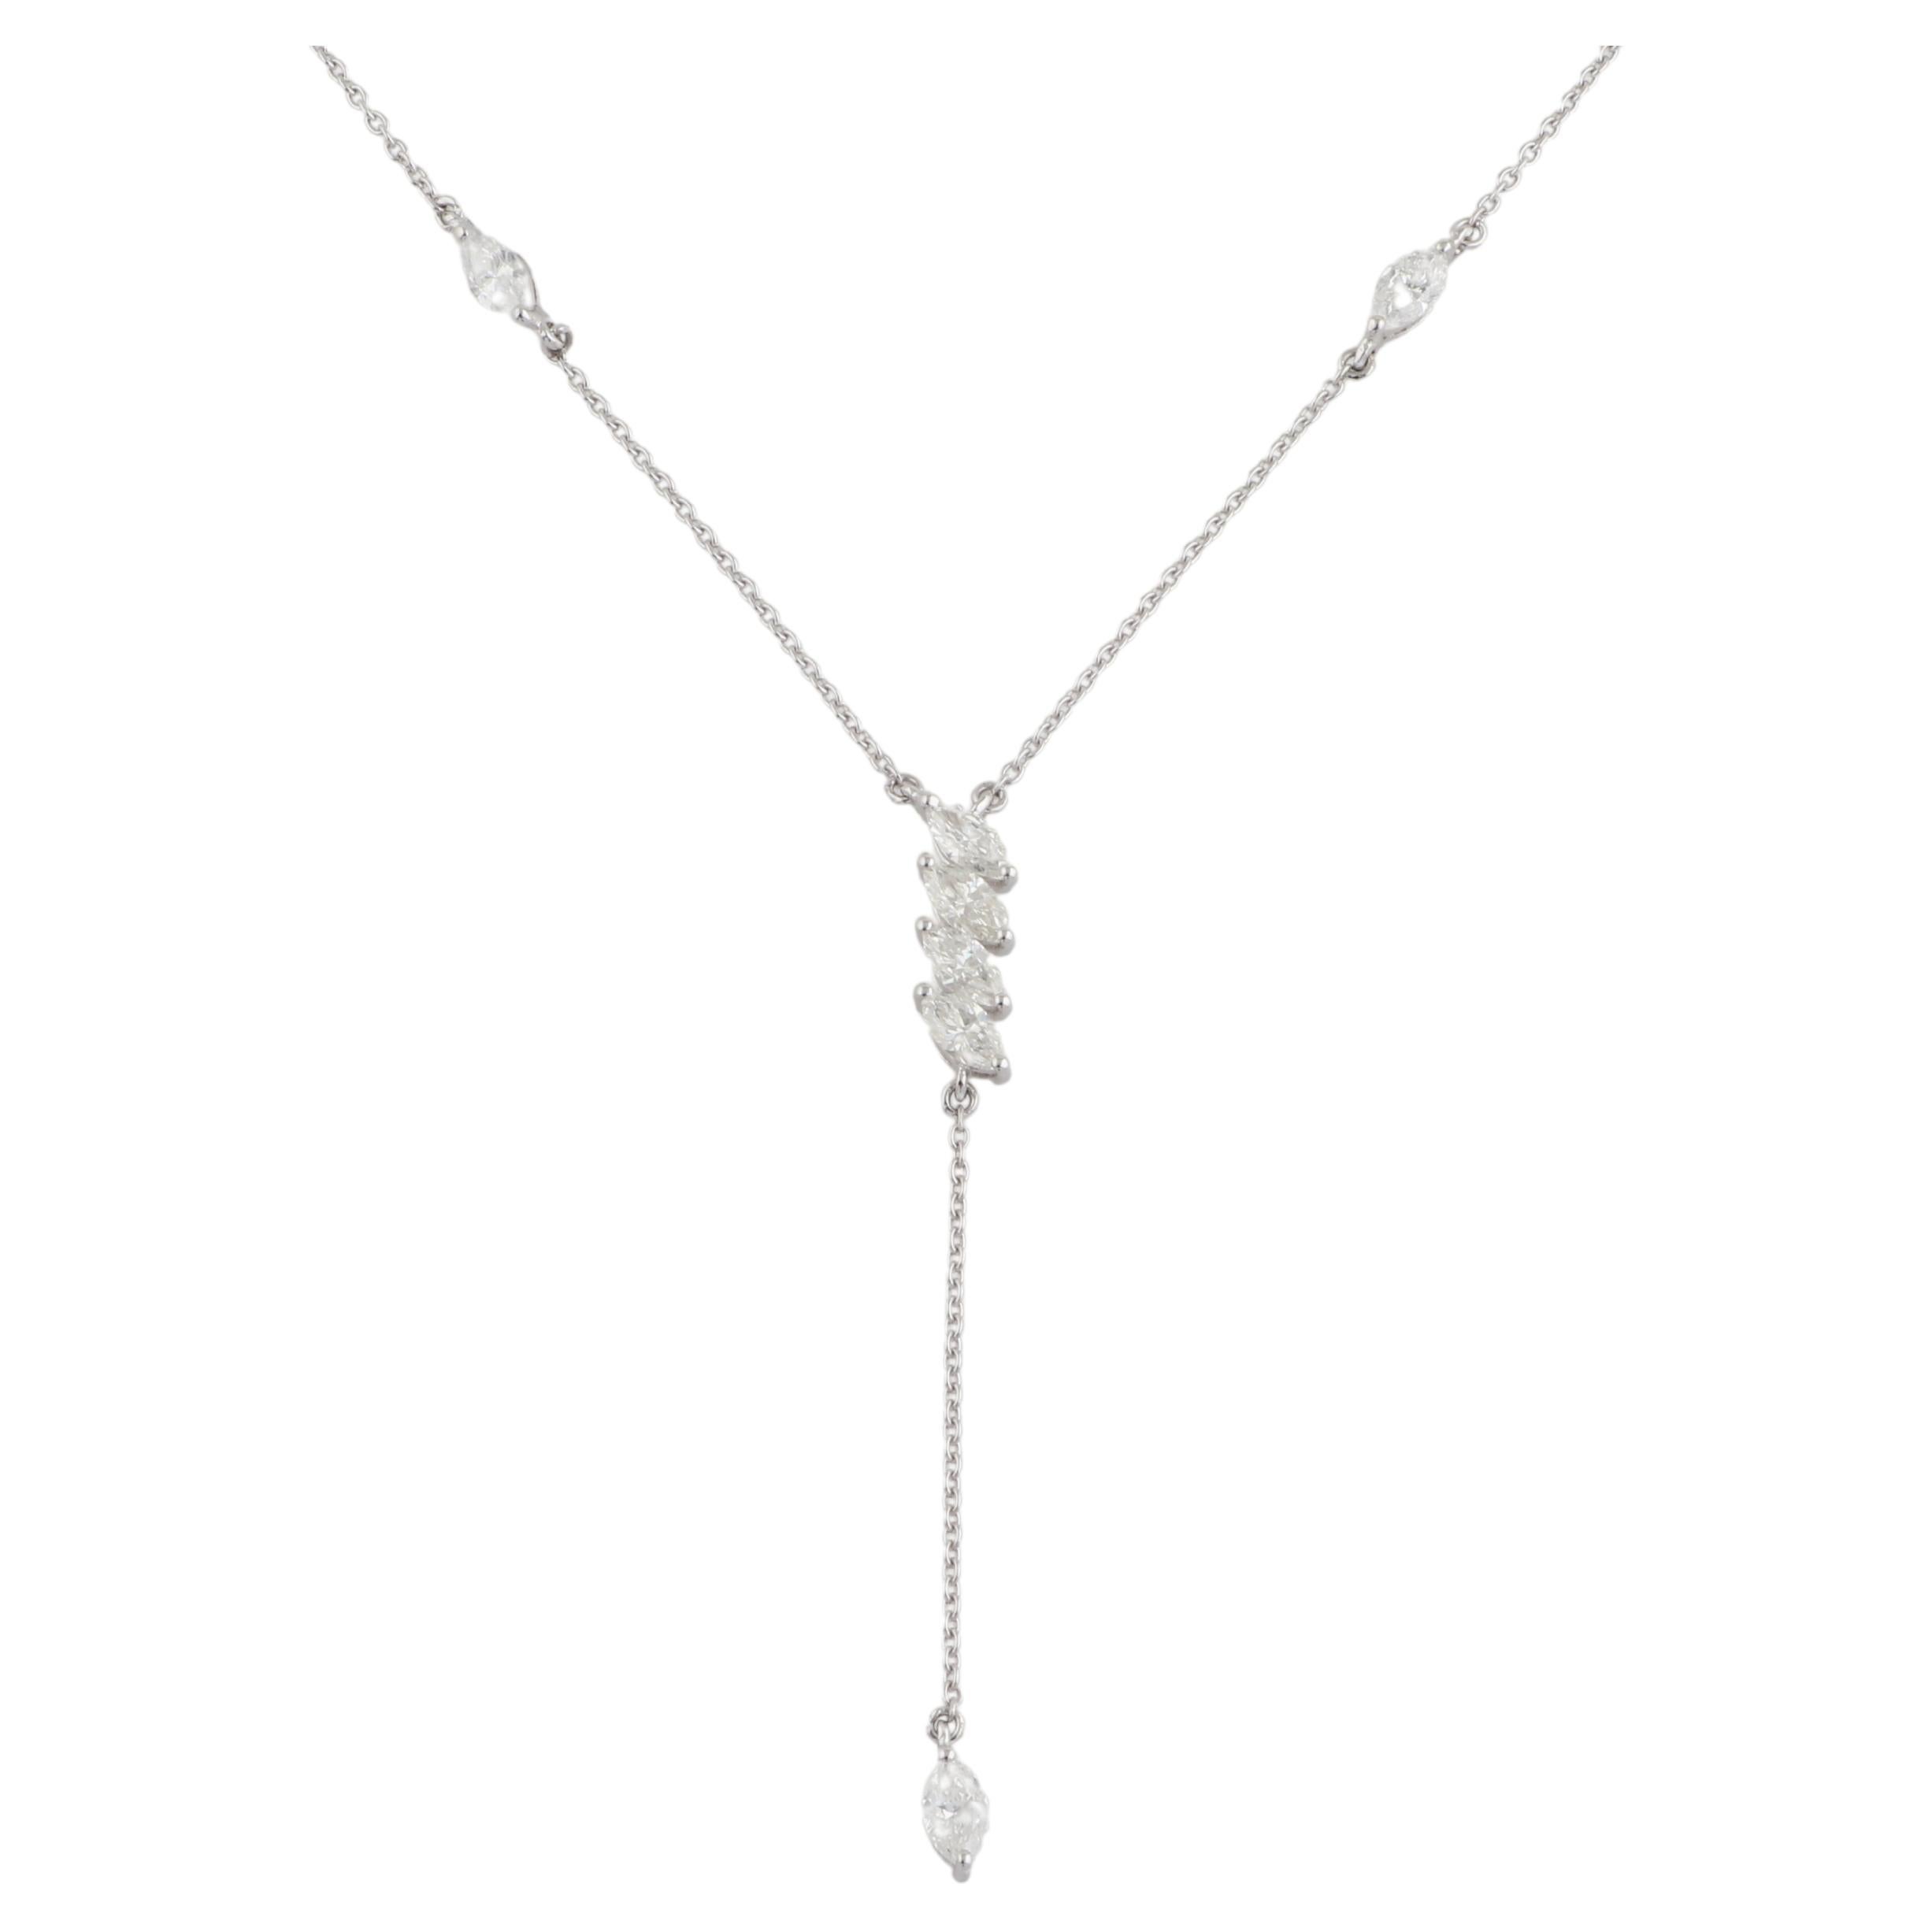 Diese Marquise Diamond Lariat Necklace ist ein vielseitiges Stück, das zu verschiedenen Anlässen getragen werden kann und jedem Ensemble einen Hauch von Glamour und Raffinesse verleiht. Ob zu einem formellen Anlass oder zu einem legeren Outfit,